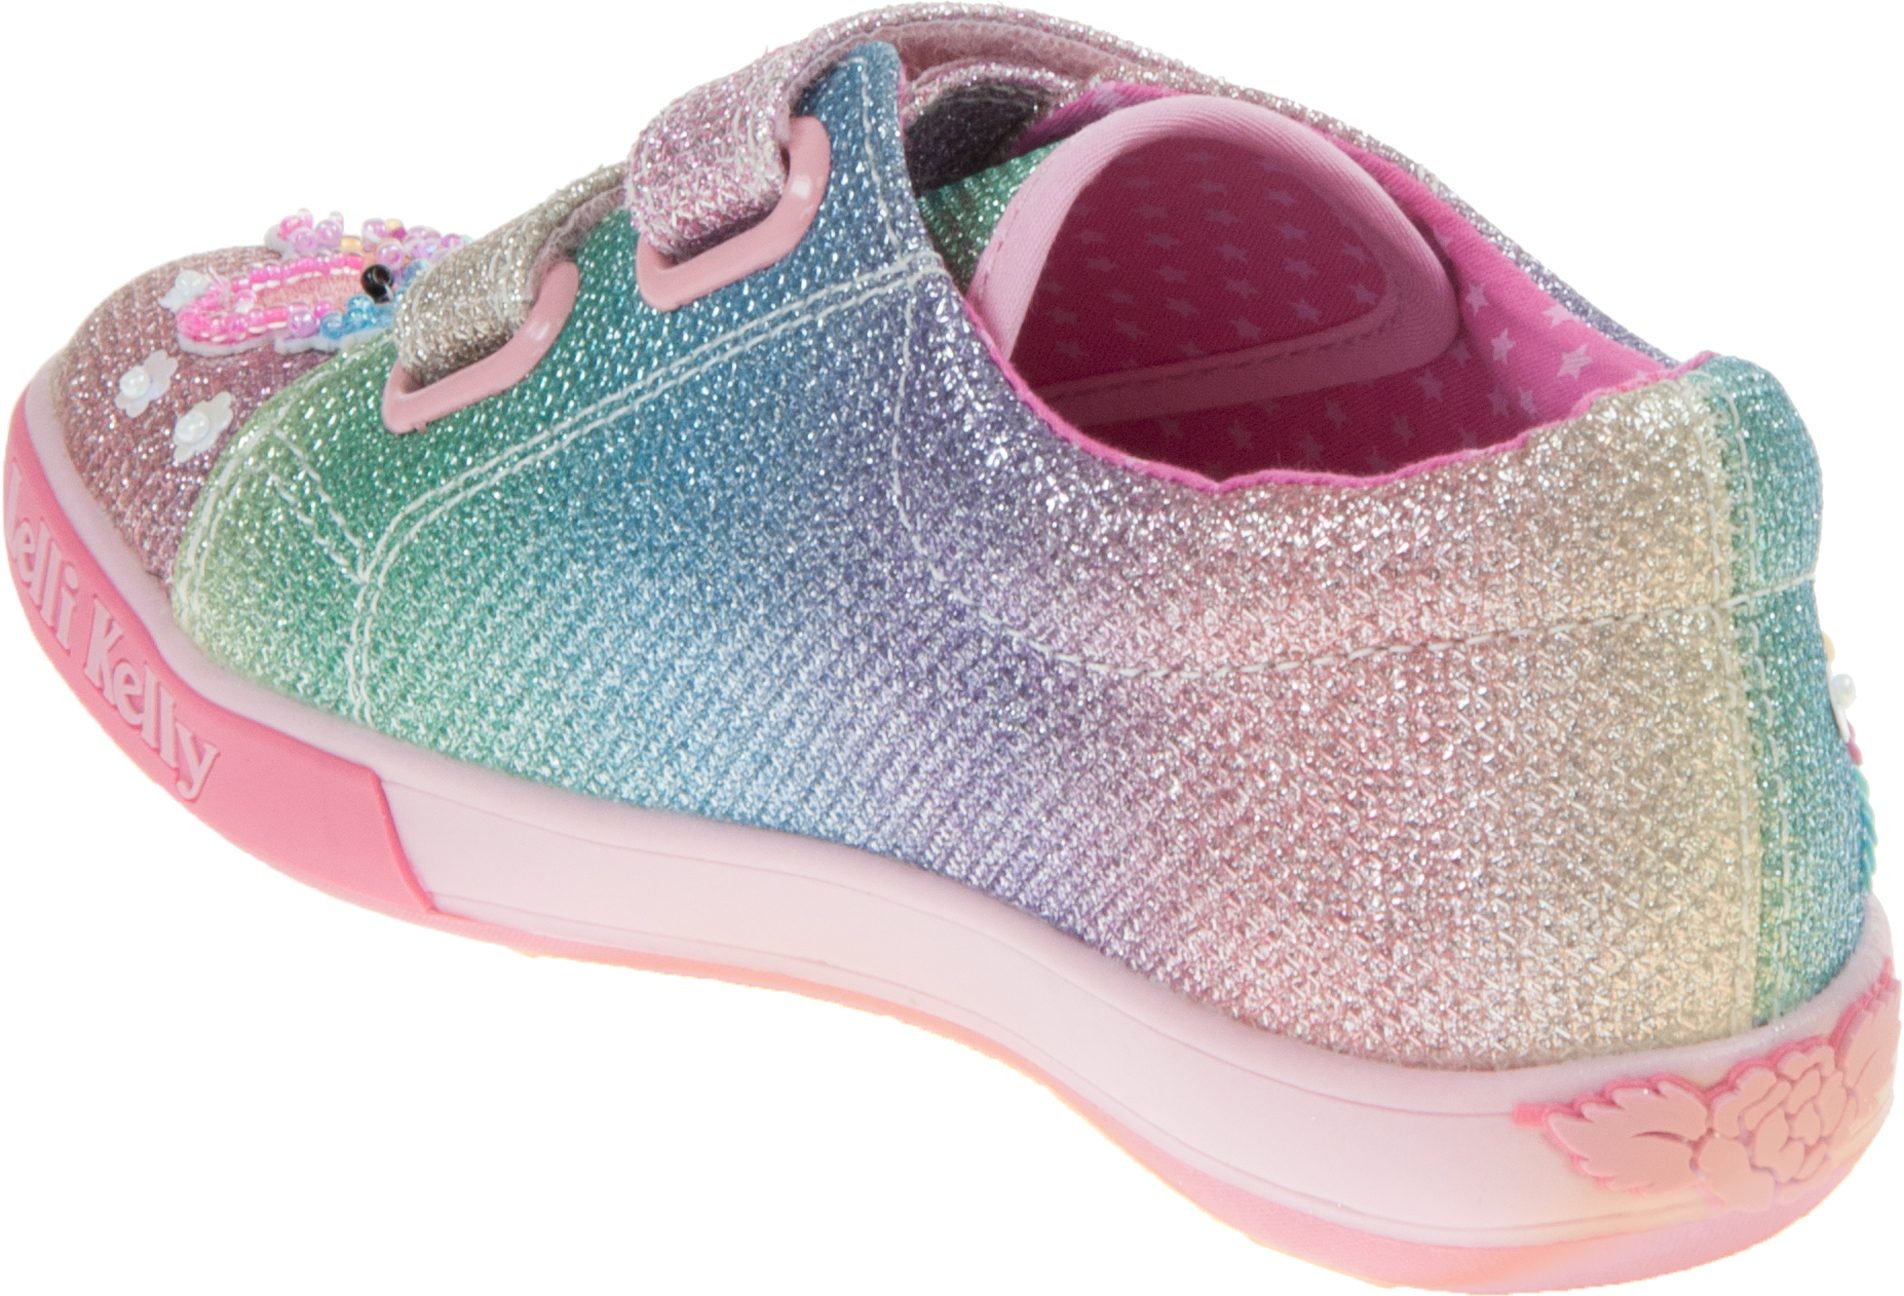 Lelli Kelly Treasure Shoe Multi Glitter LK7077 - Girls Shoes ...